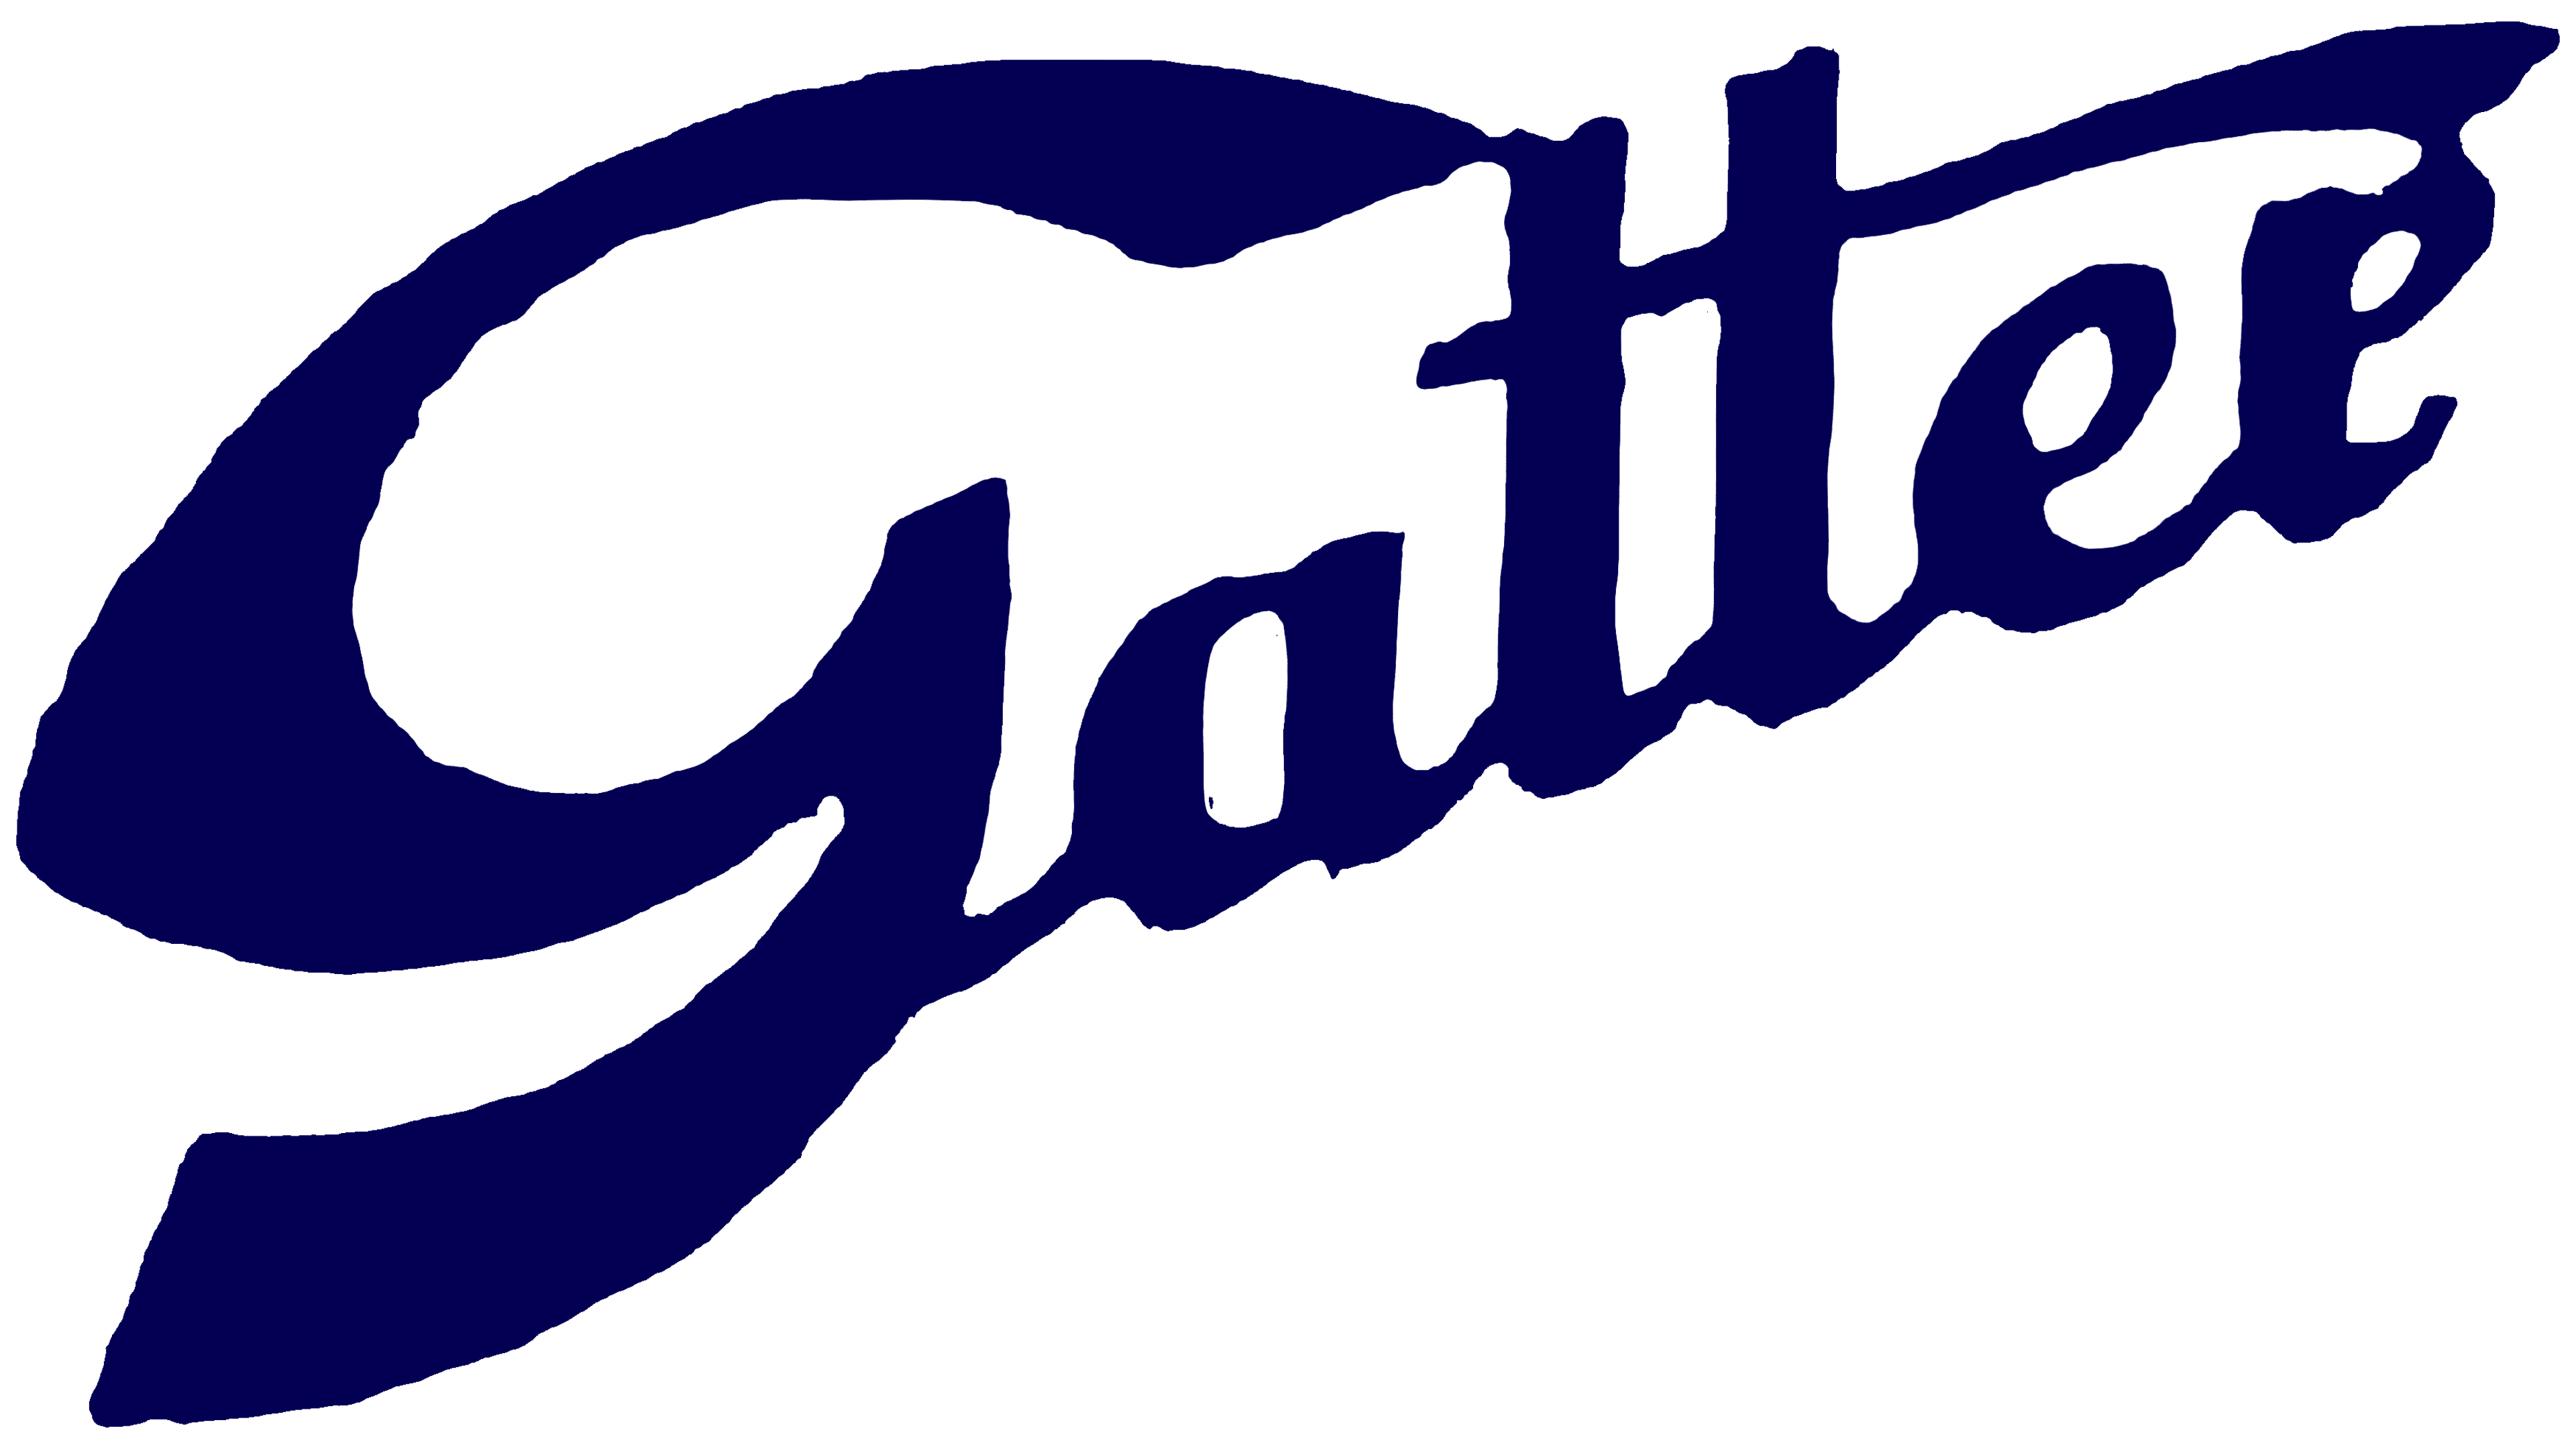 Gatter Transparent Logo PNG